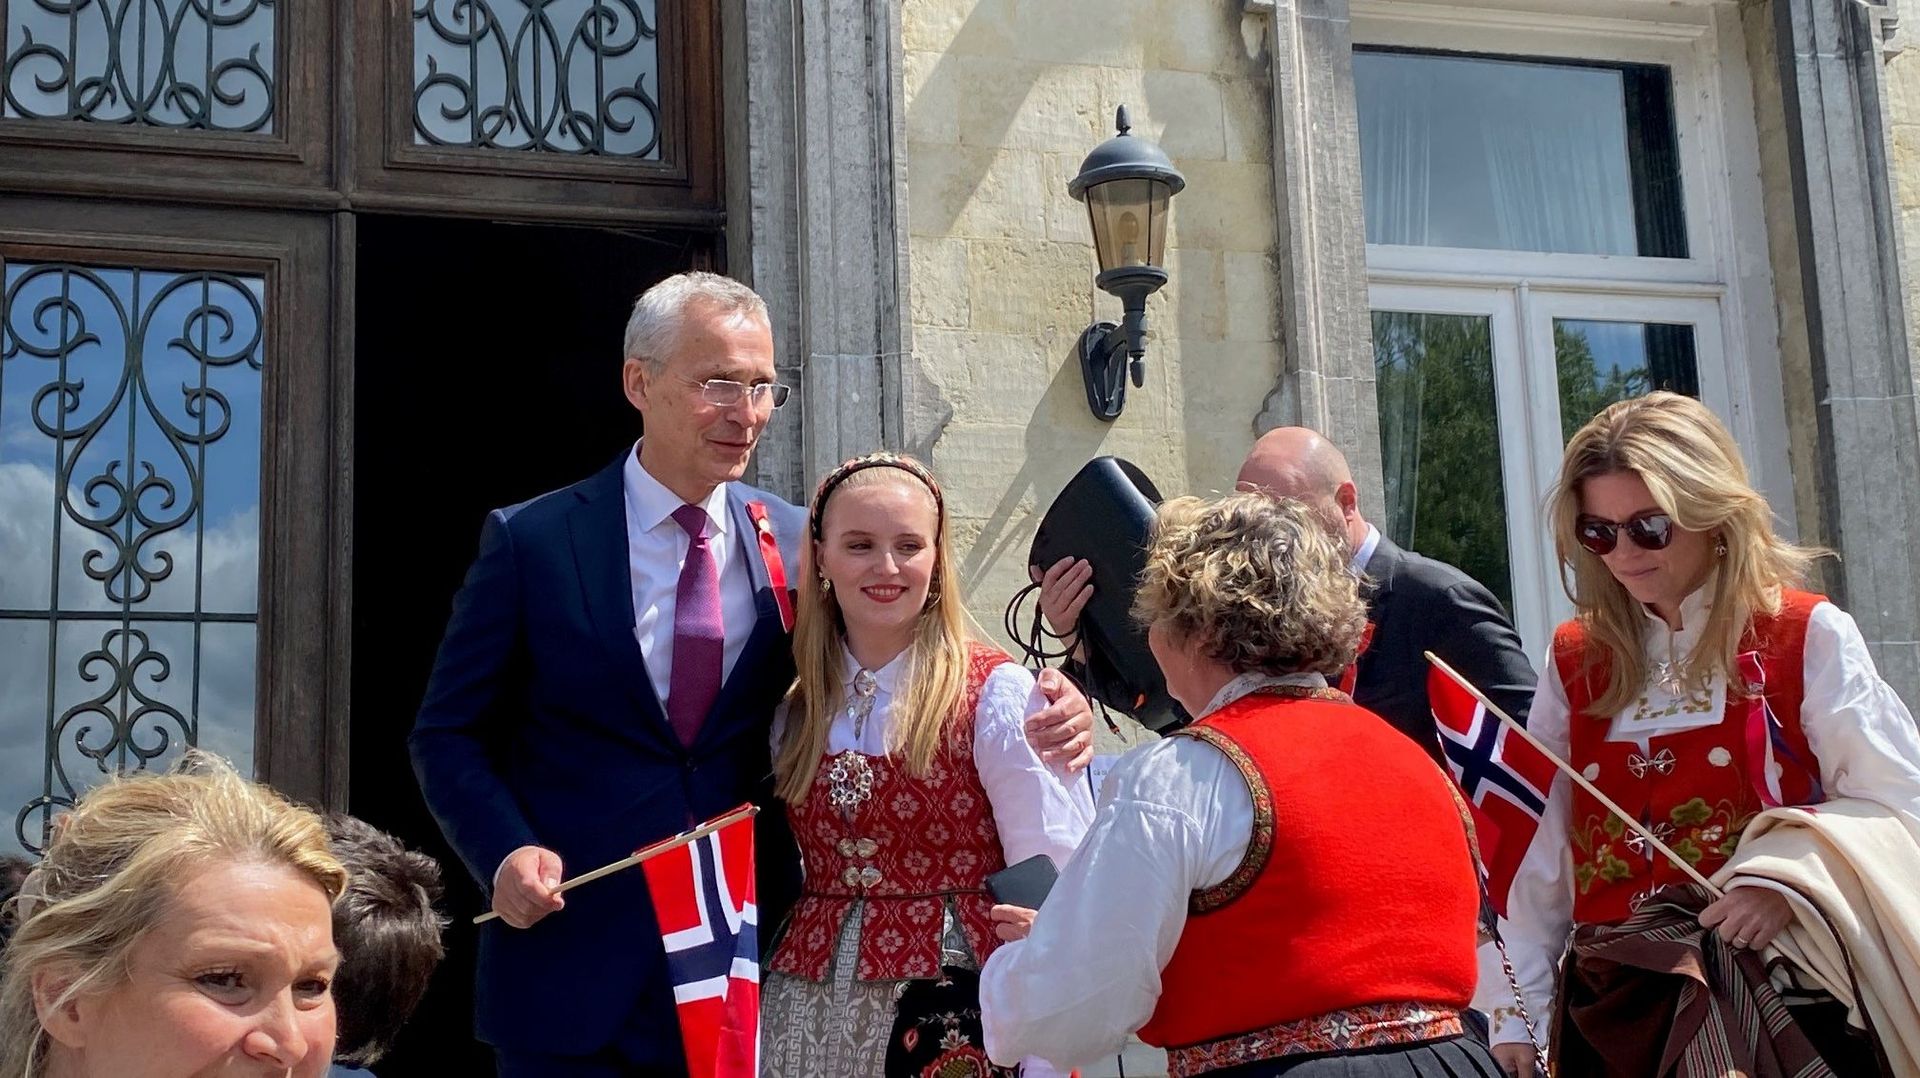 Jens Stoltenberg, Secrétaire Général de l’Otan et ancien 1er ministre norvégien, était l’invité de prestige ce mercredi au domaine d’Argenteuil de Waterloo. C’était à l’occasion de la fête nationale norvégienne, organisée par l’association des expatriés n